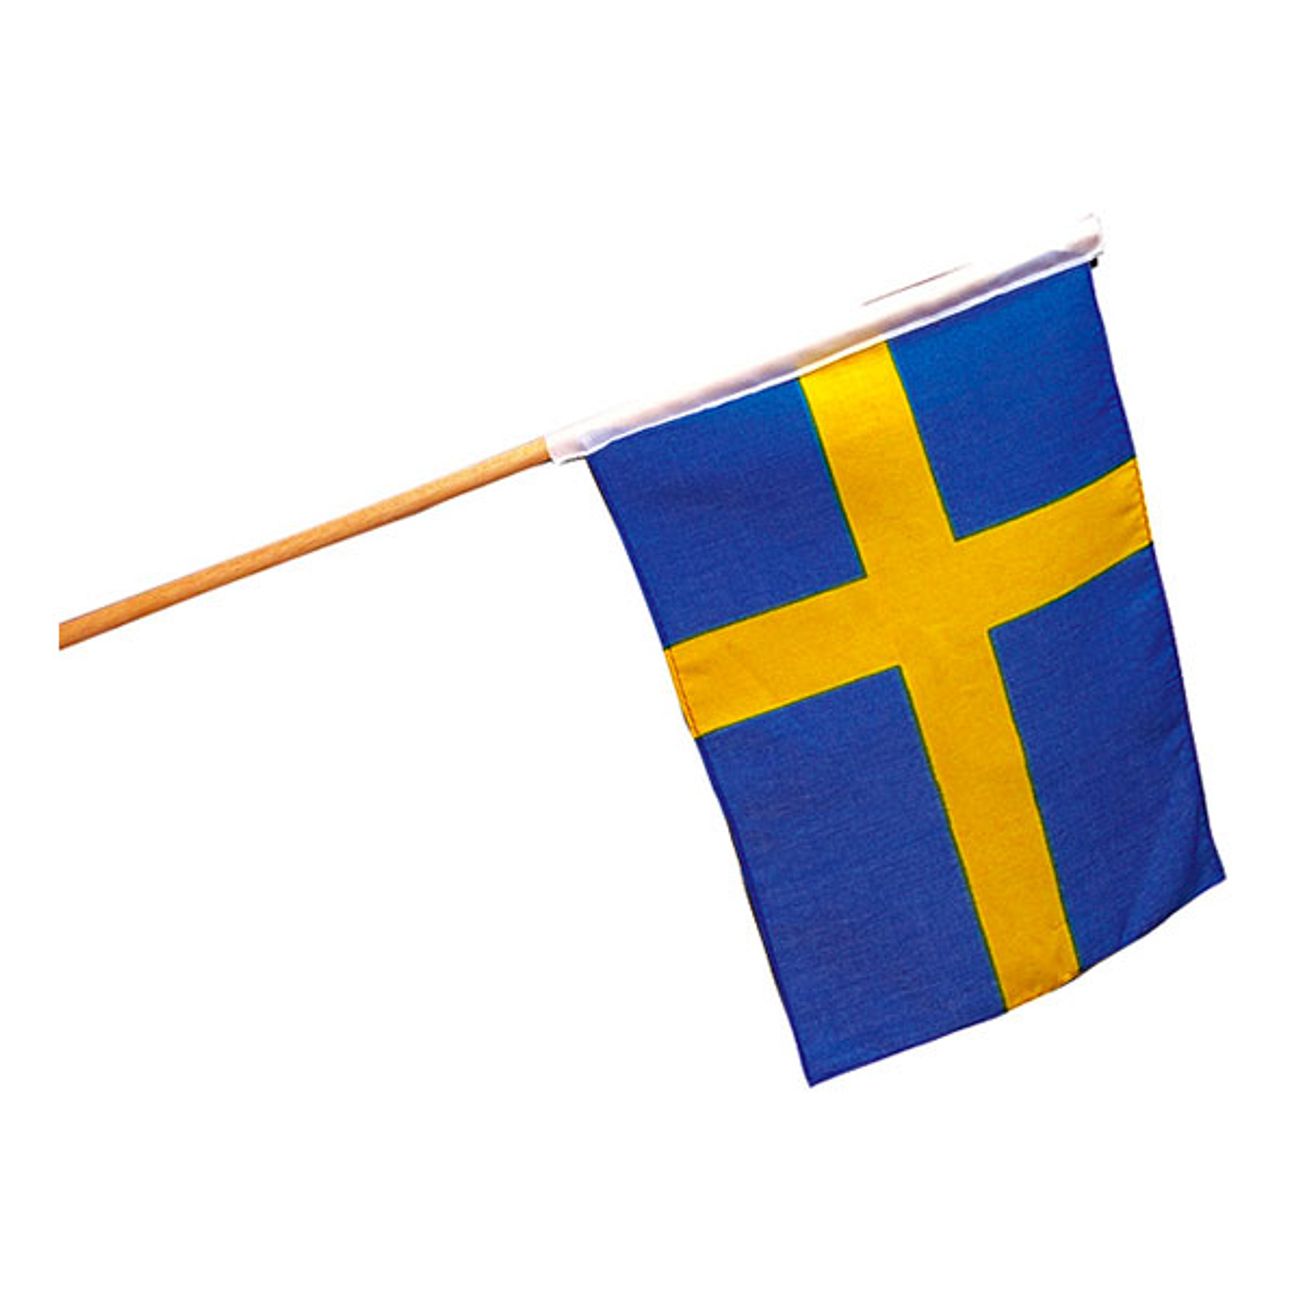 svensk-flagga-2